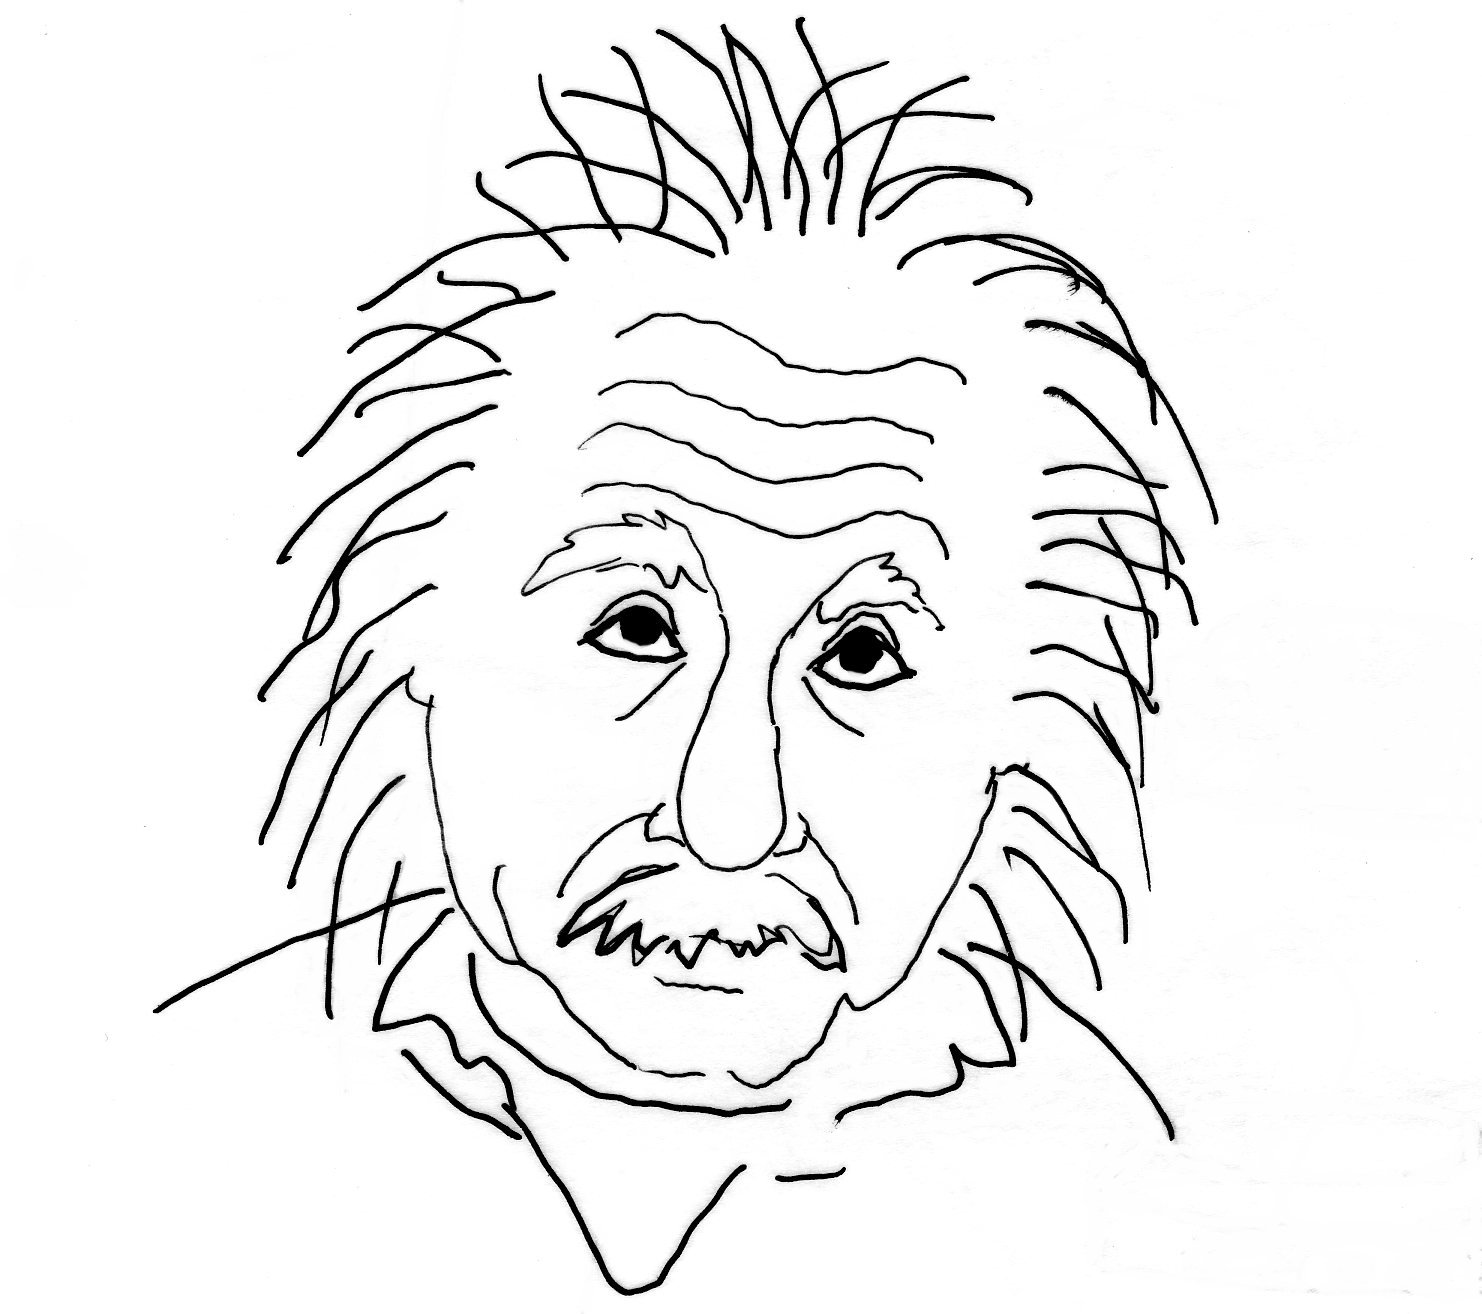 Альберт Эйнштейн рисовка